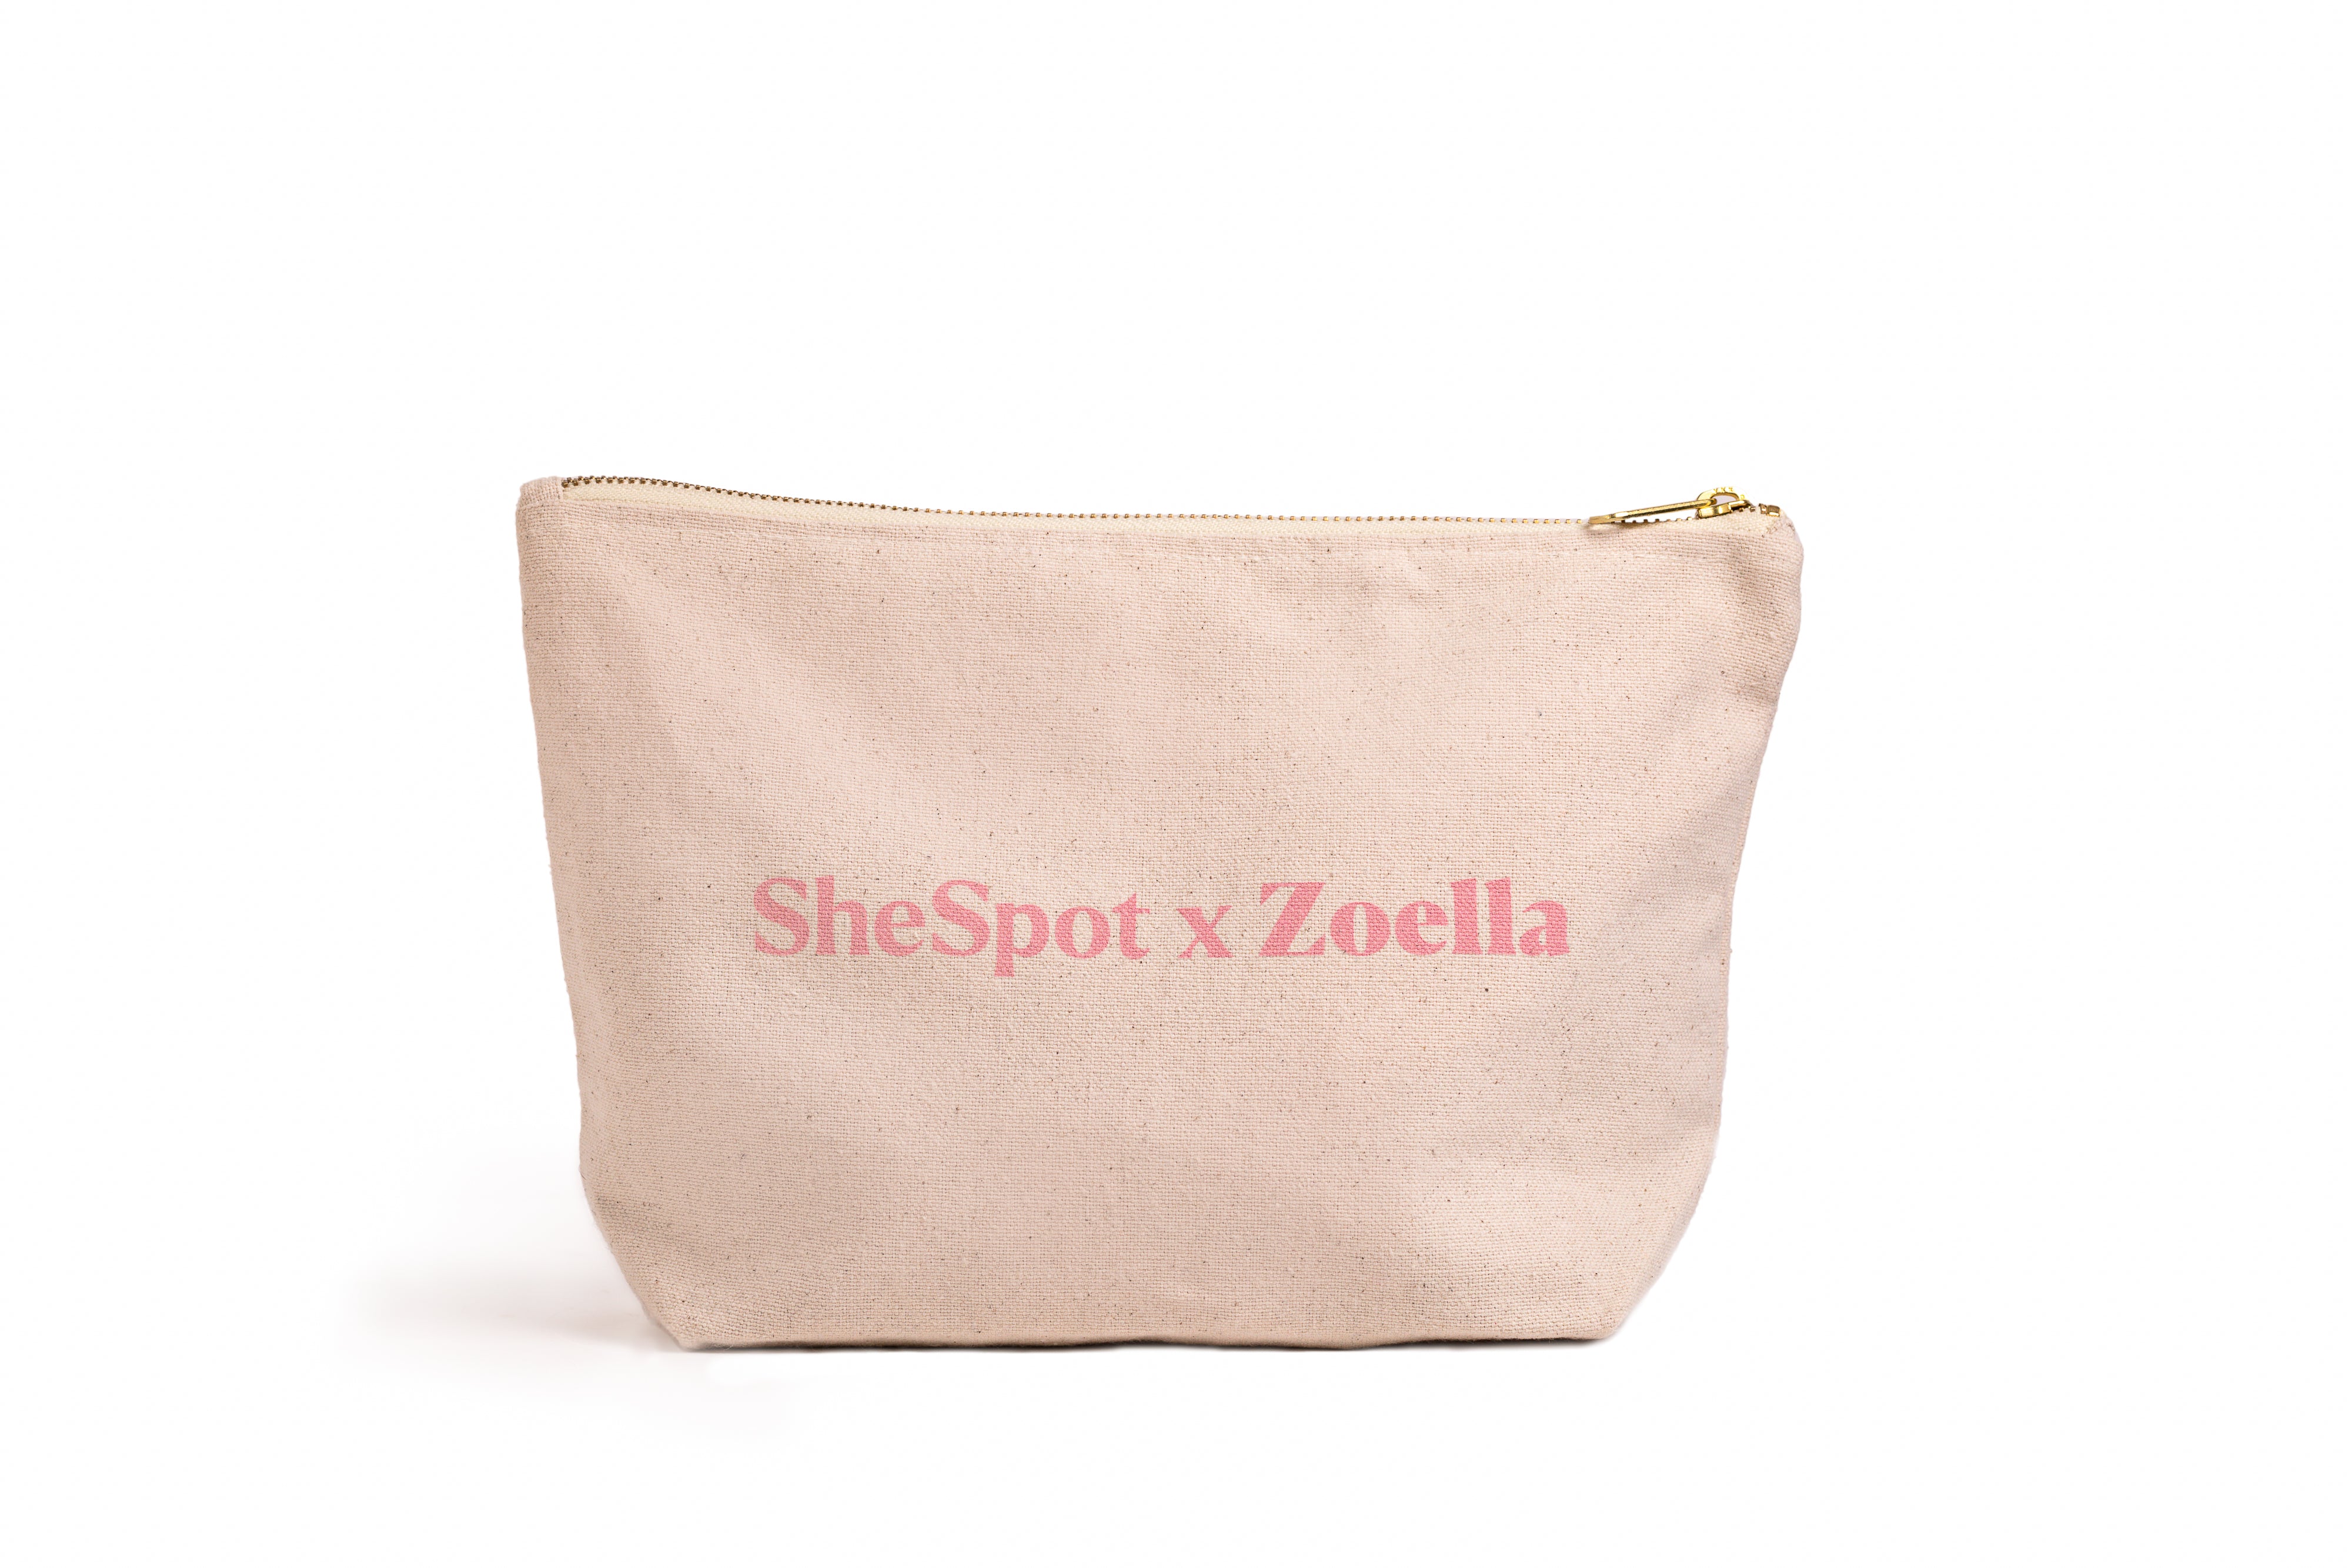 SheSpot x Zoella Pleasure Pouch